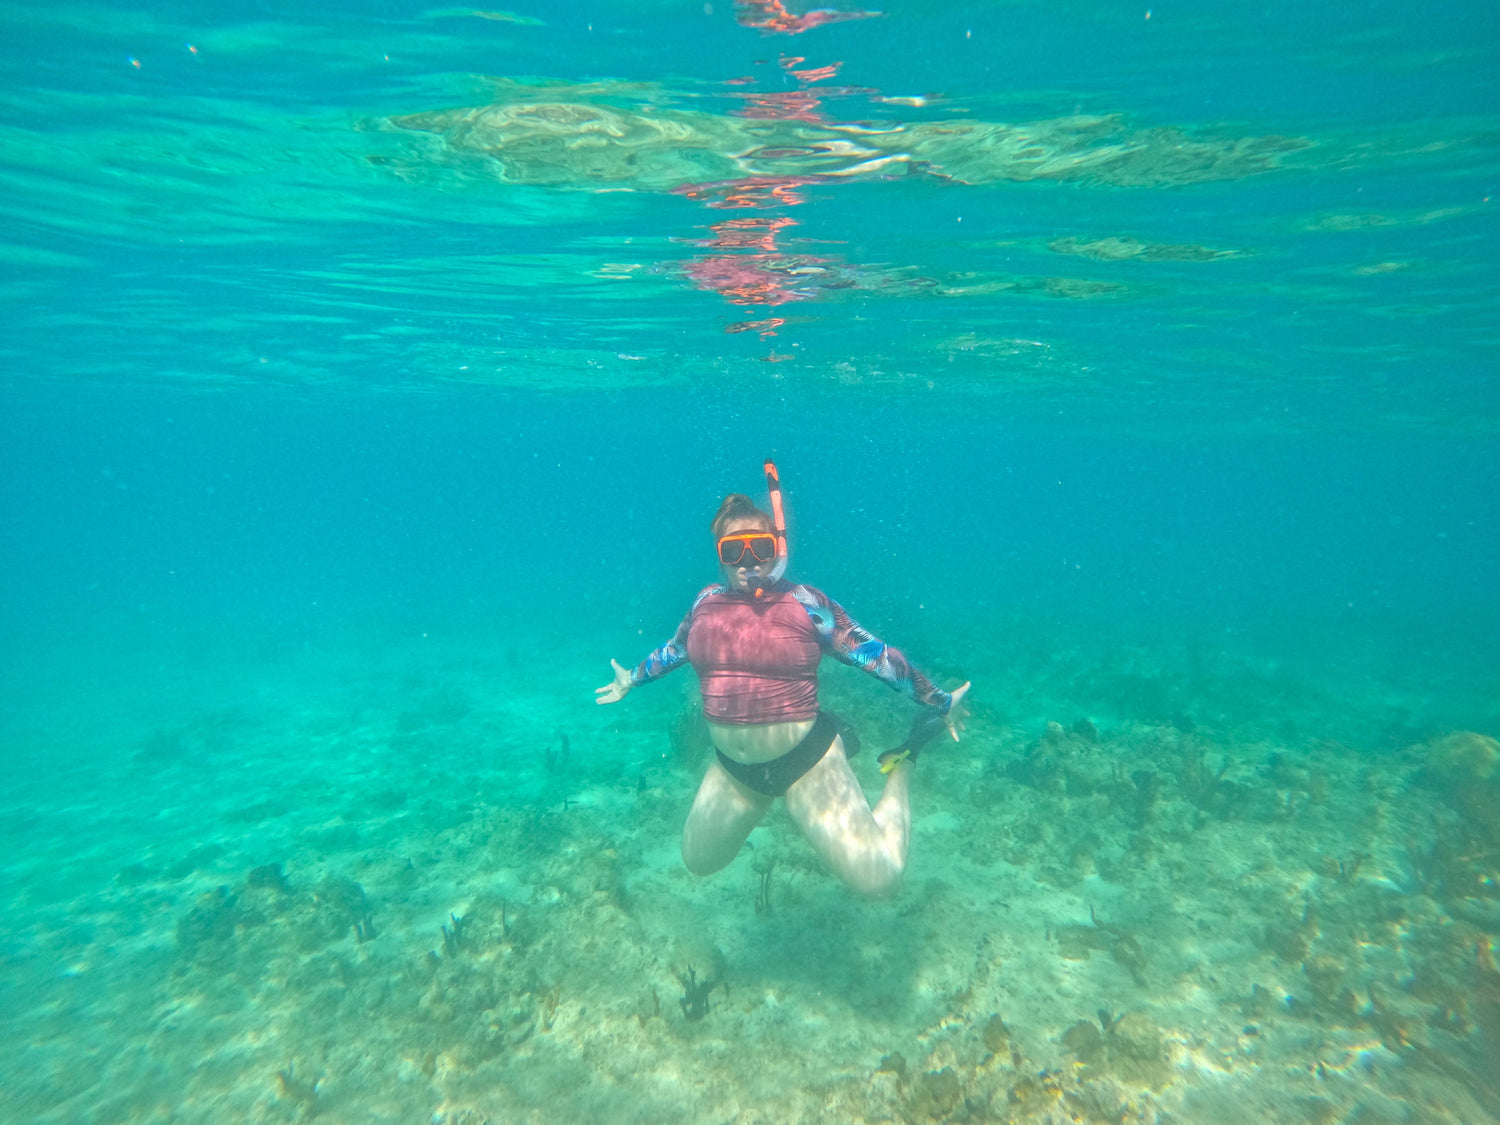 Owner of rolling coast threads, Kelsey, snorkeling in the U.S. Virgin Island waters.